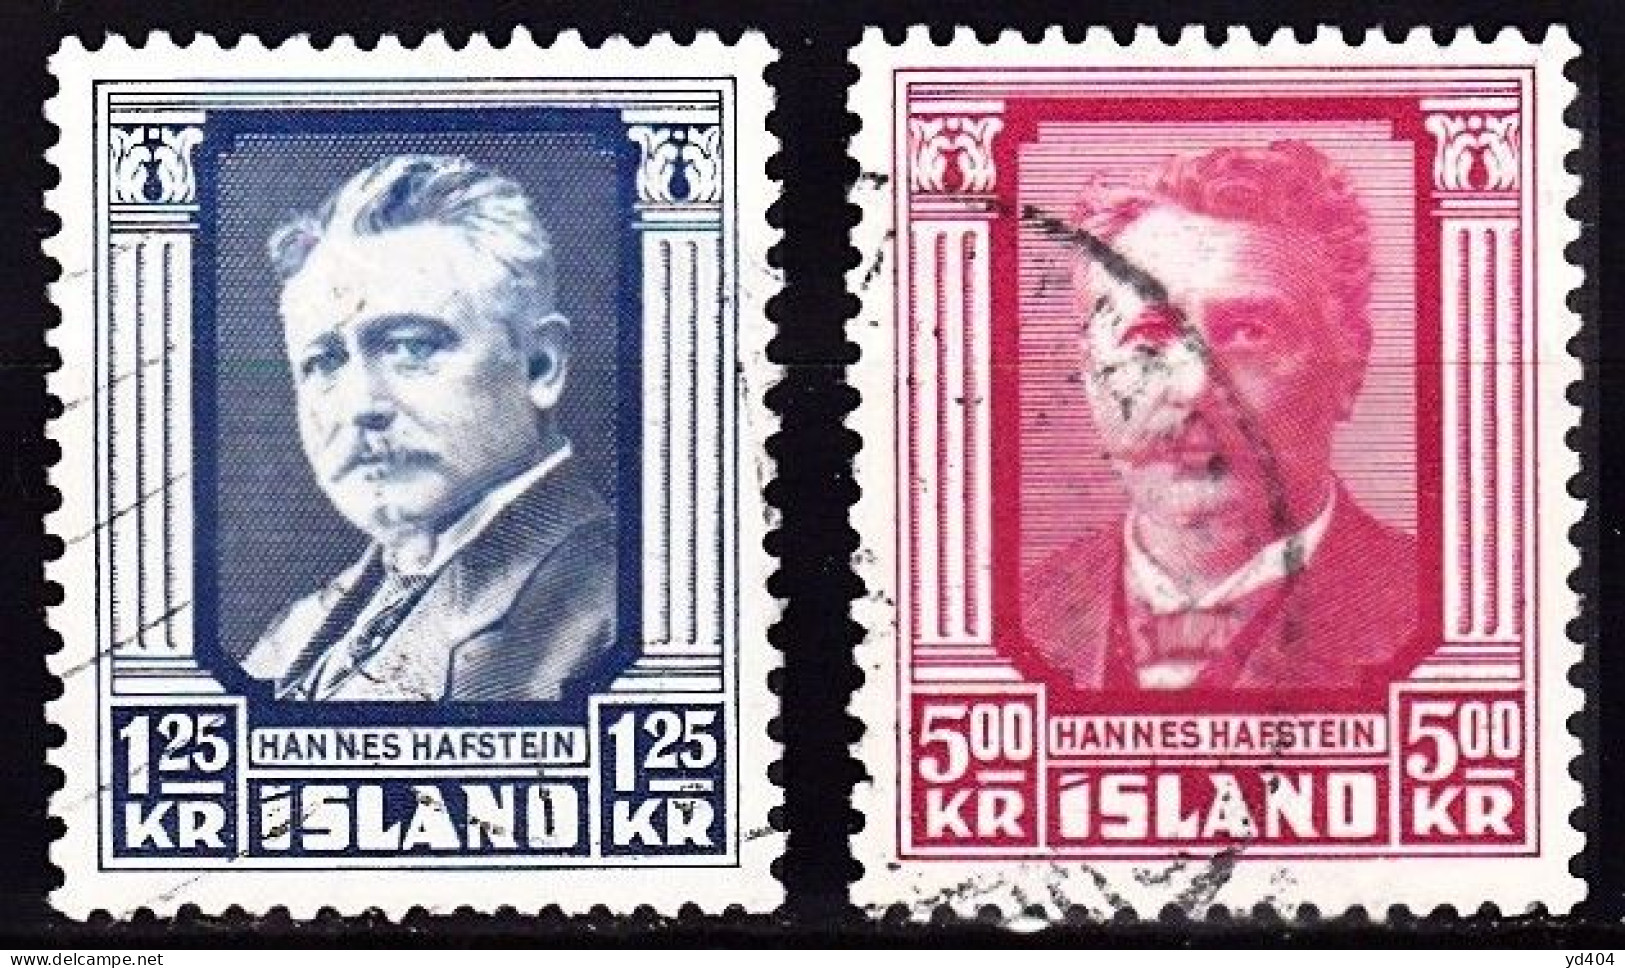 IS059B – ISLANDE – ICELAND – 1954 – HANNES HAFSTEIN – MI # 293-295 USED - Usati